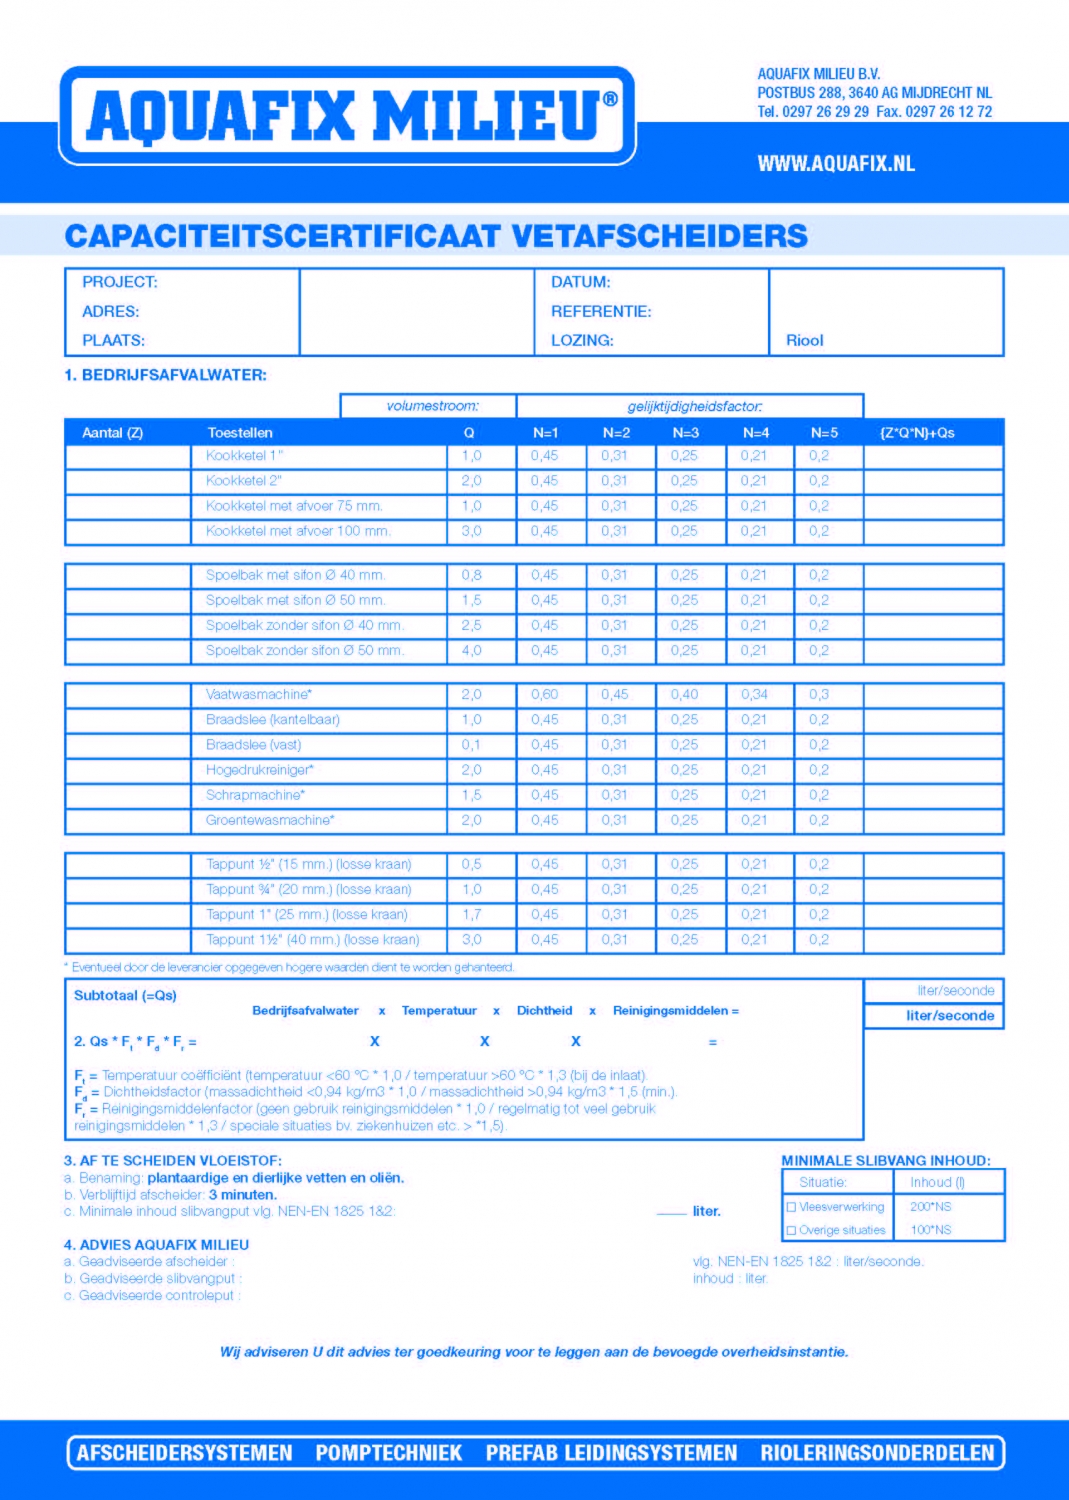 capaciteitsberekening-vetafscheiders-en1825